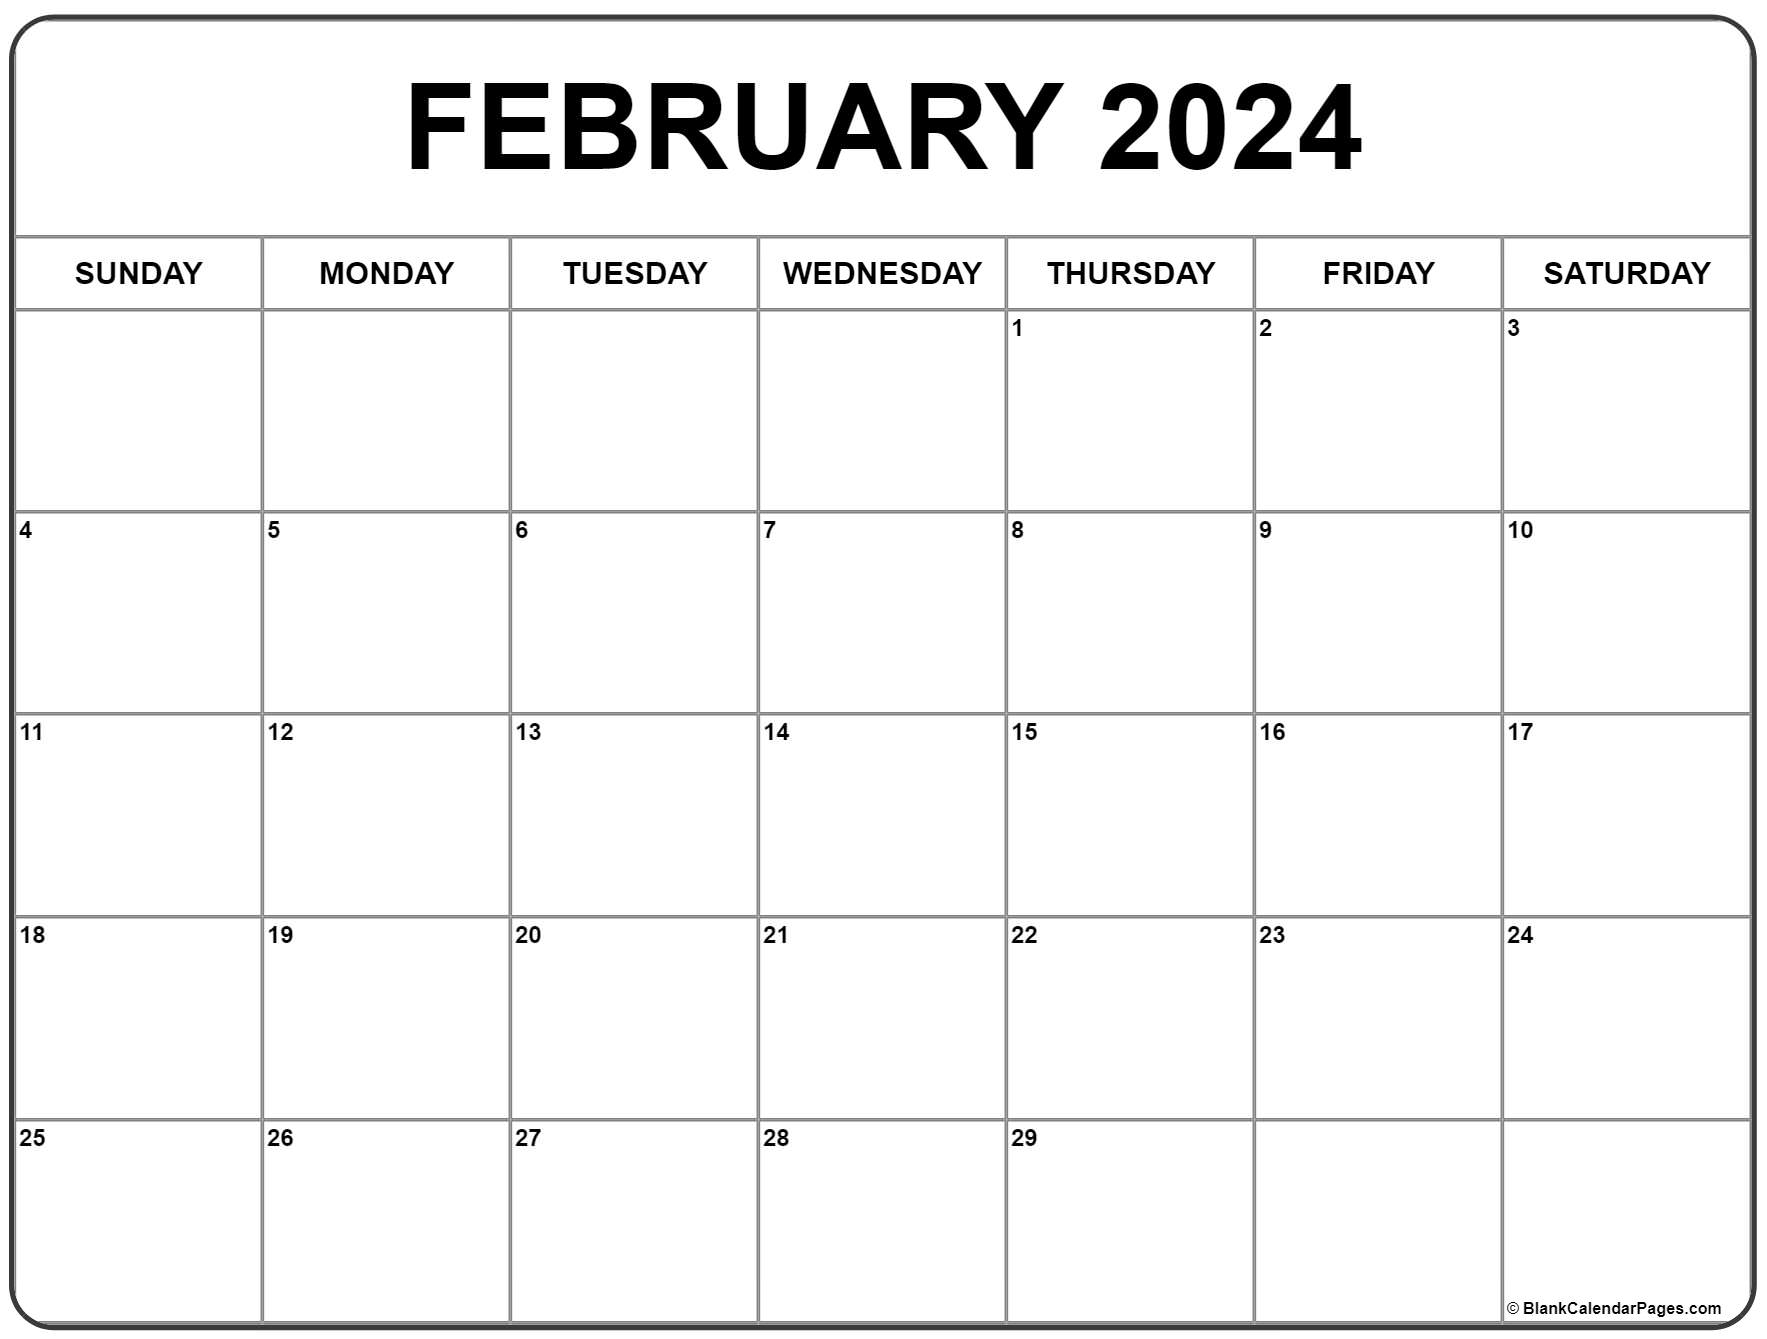 February 2024 Calendar | Free Printable Calendar for Printable 2024 Feb Calendar